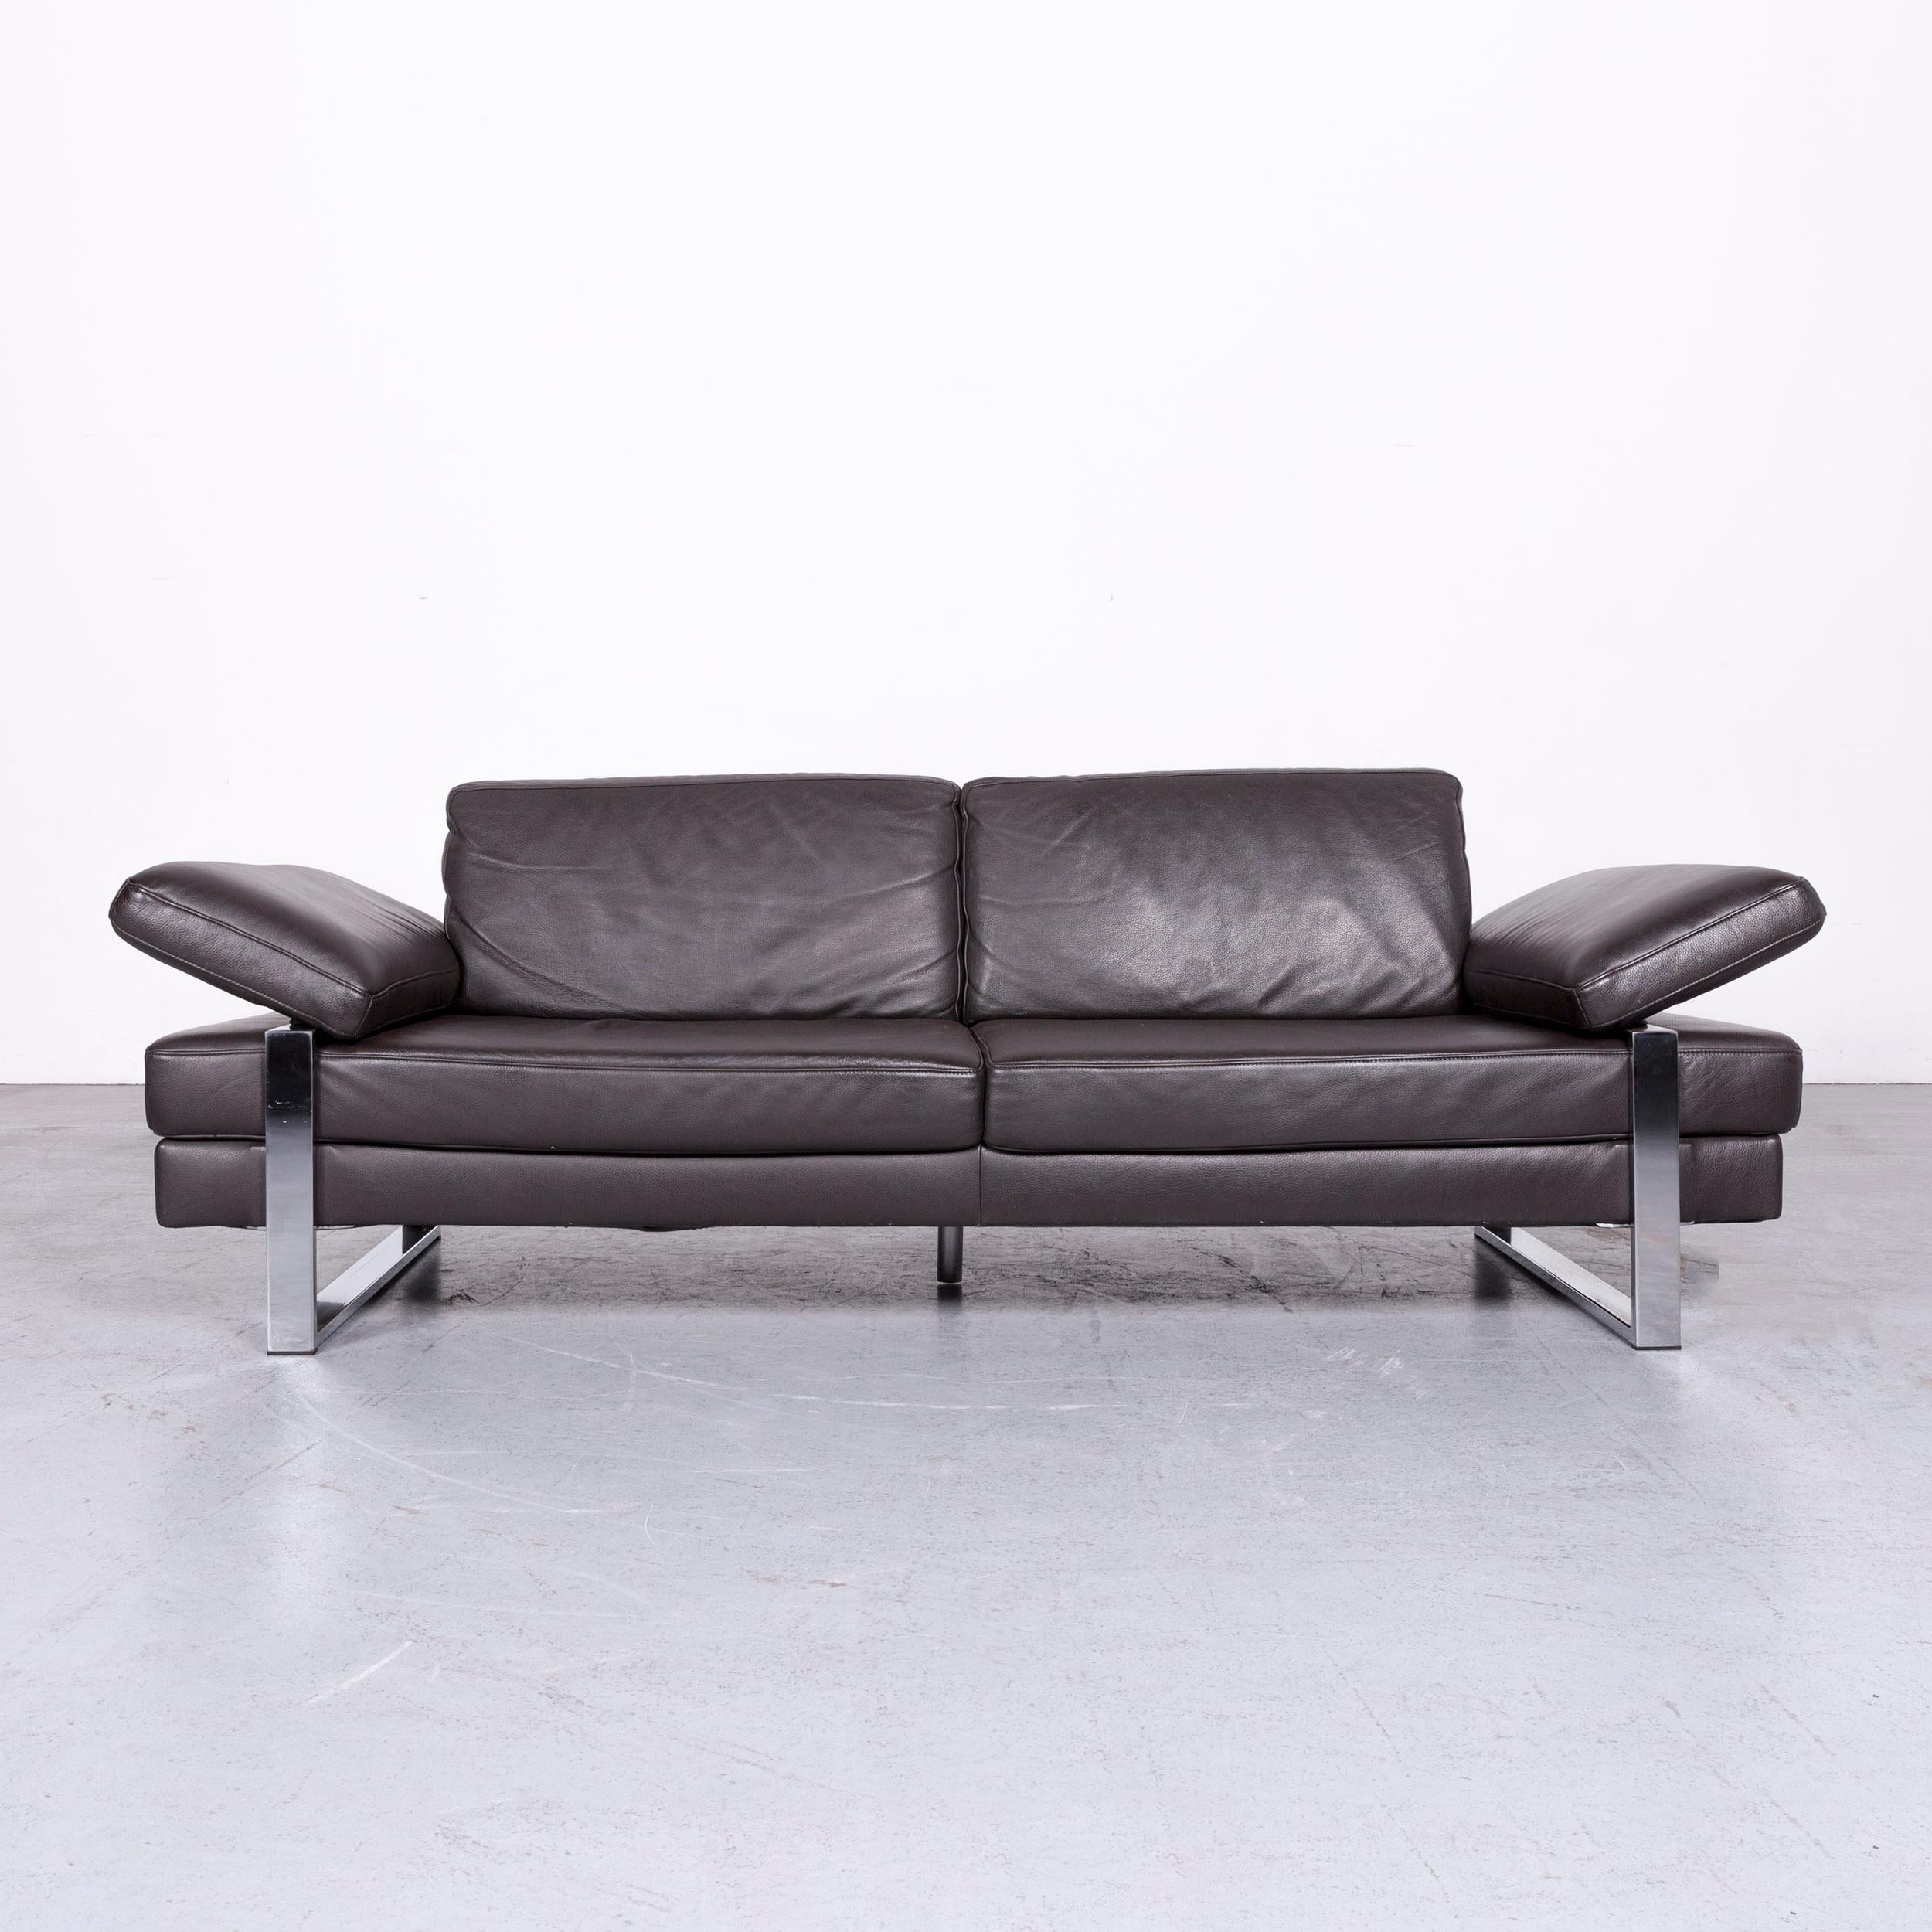 German Ewald Schillig Designer Sofa Brown Three-Seat Couch Leather